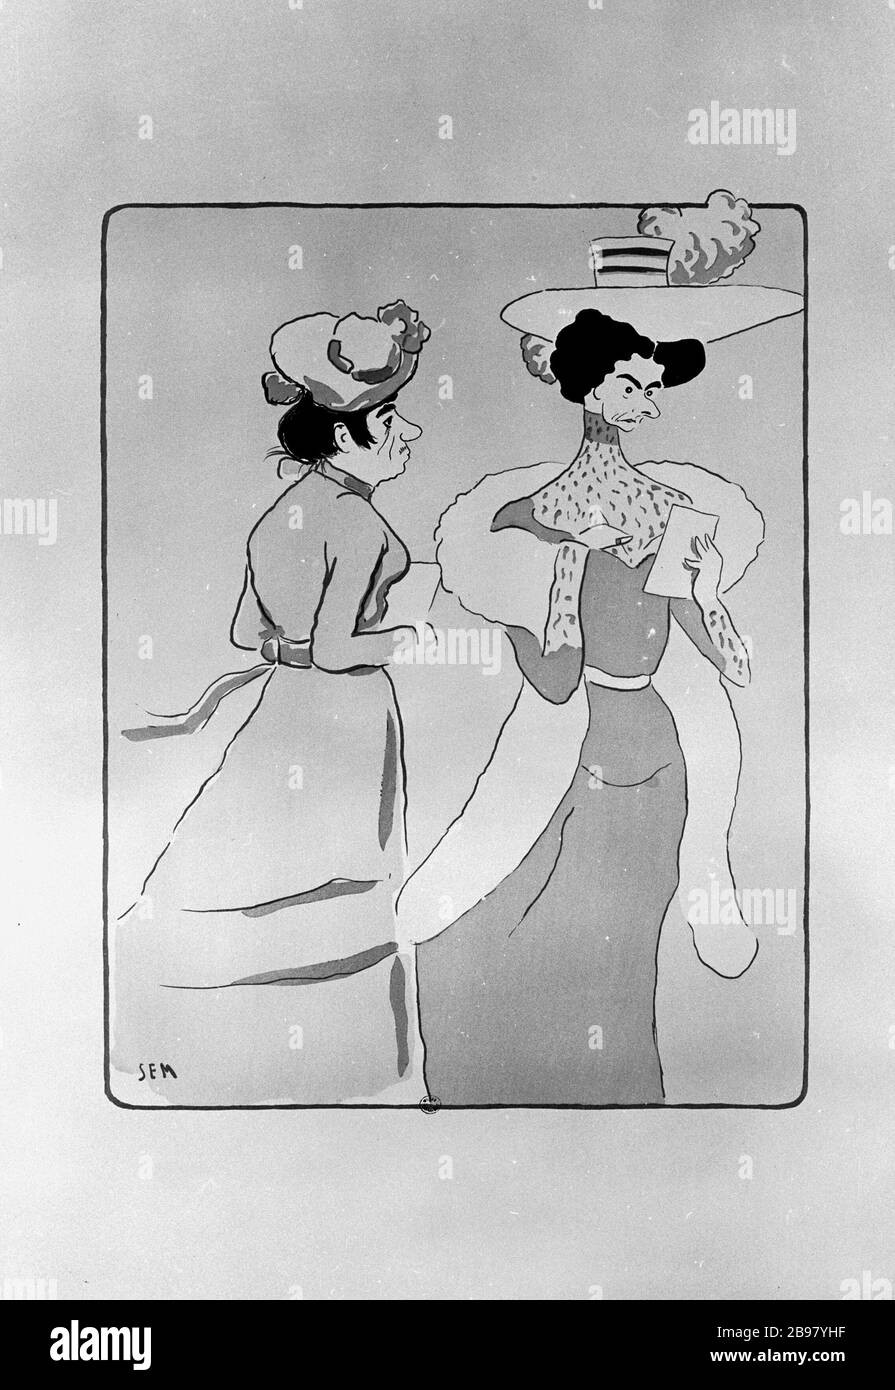 WHITE ALBUM, STAMP ROUX: HORROR OF UGLY WOMEN Sem (1863-1934). 'Album blanc, cachet roux : l'horreur des femmes laides'. Lithographie en couleurs, 1901. Paris, musée Carnavalet. Stock Photo